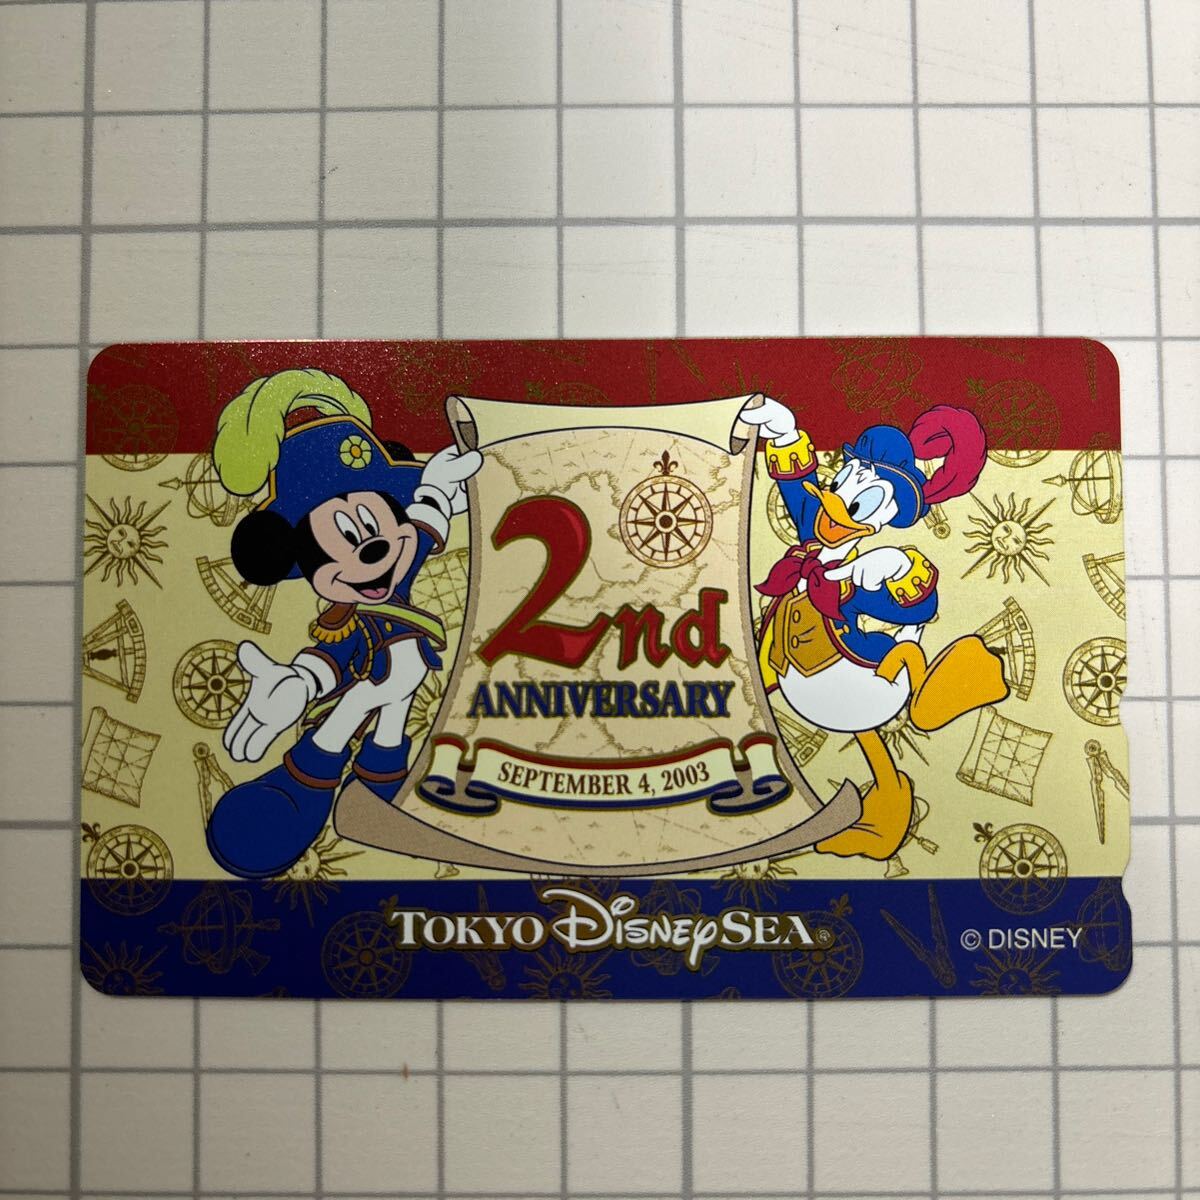 Tokyo Disney sea телефонная карточка 